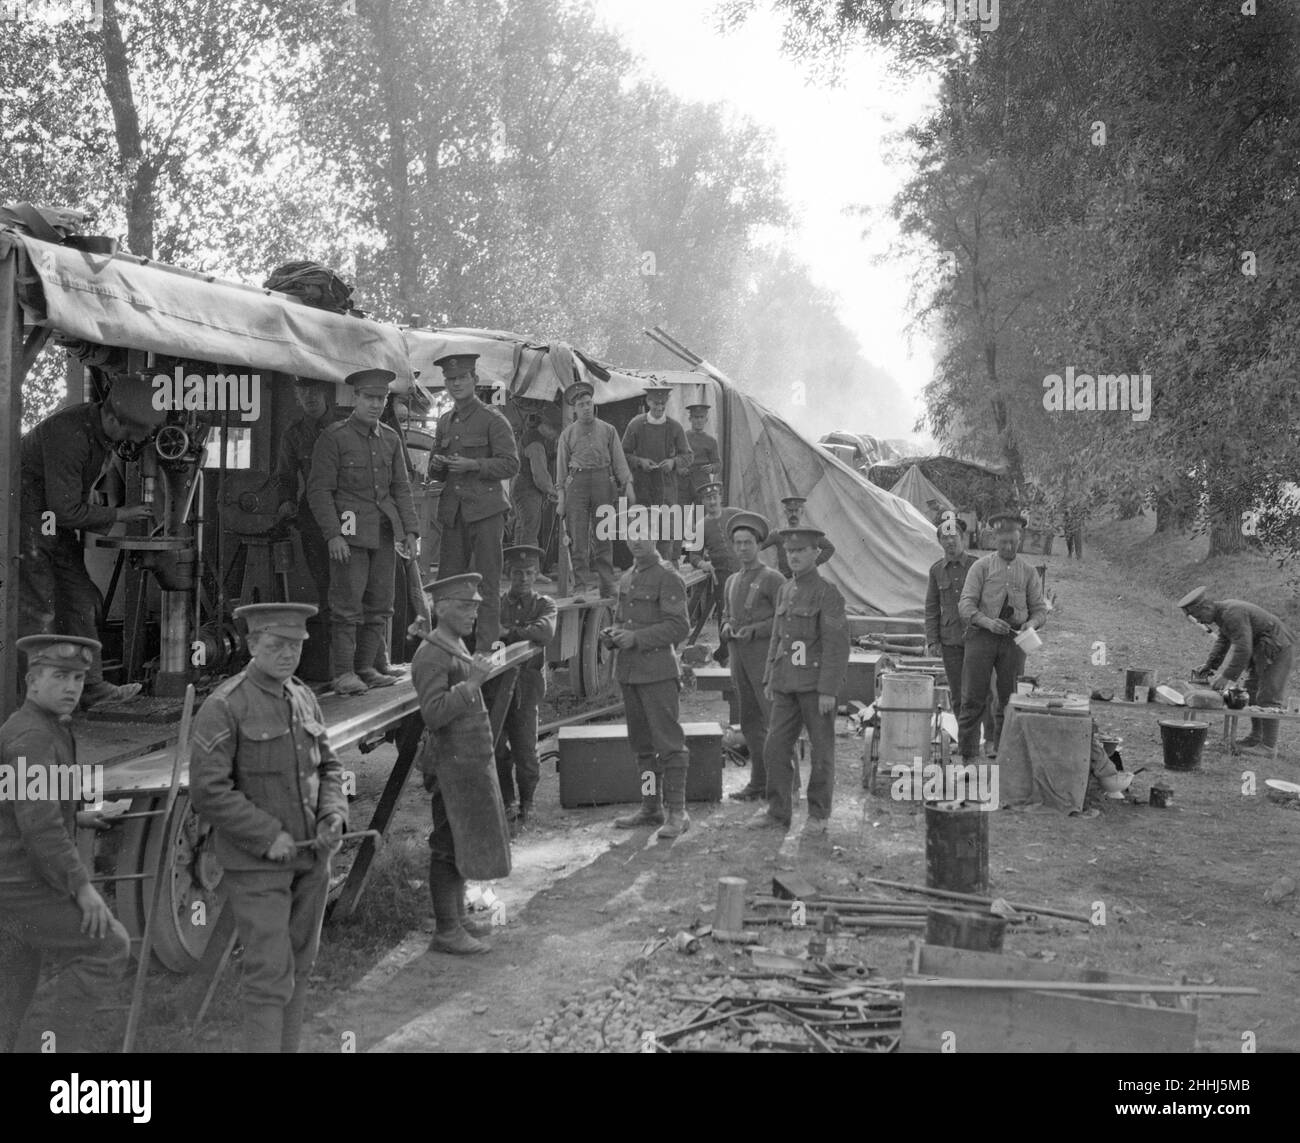 Army Service Corps Frankreich Oktober 1914 die unbesungenen Helden der britischen Armee während des Ersten Weltkriegs, der ASC, bekannt als 'Ally Sloper's Cavalry' - waren die Männer, die den Transport betrieben und die Nahrung, Ausrüstung und die Patronen zur Verfügung stellten. Im Großen Krieg wurde der überwiegende Teil dieser Tonnage, die eine riesige Armee an vielen Fronten lieferte, aus Großbritannien mit einer Reihe von Transportmethoden, darunter Horse- und Kraftfahrzeuge, geliefert. Eisenbahnen und Wasserstraßen. Die ASC hat wunderbare Logistikleistungen erbracht und war eine der großen Stärken der Organisation, durch die der Krieg geführt wurde. Unser Bild Zeigt: Unsere Stockfoto